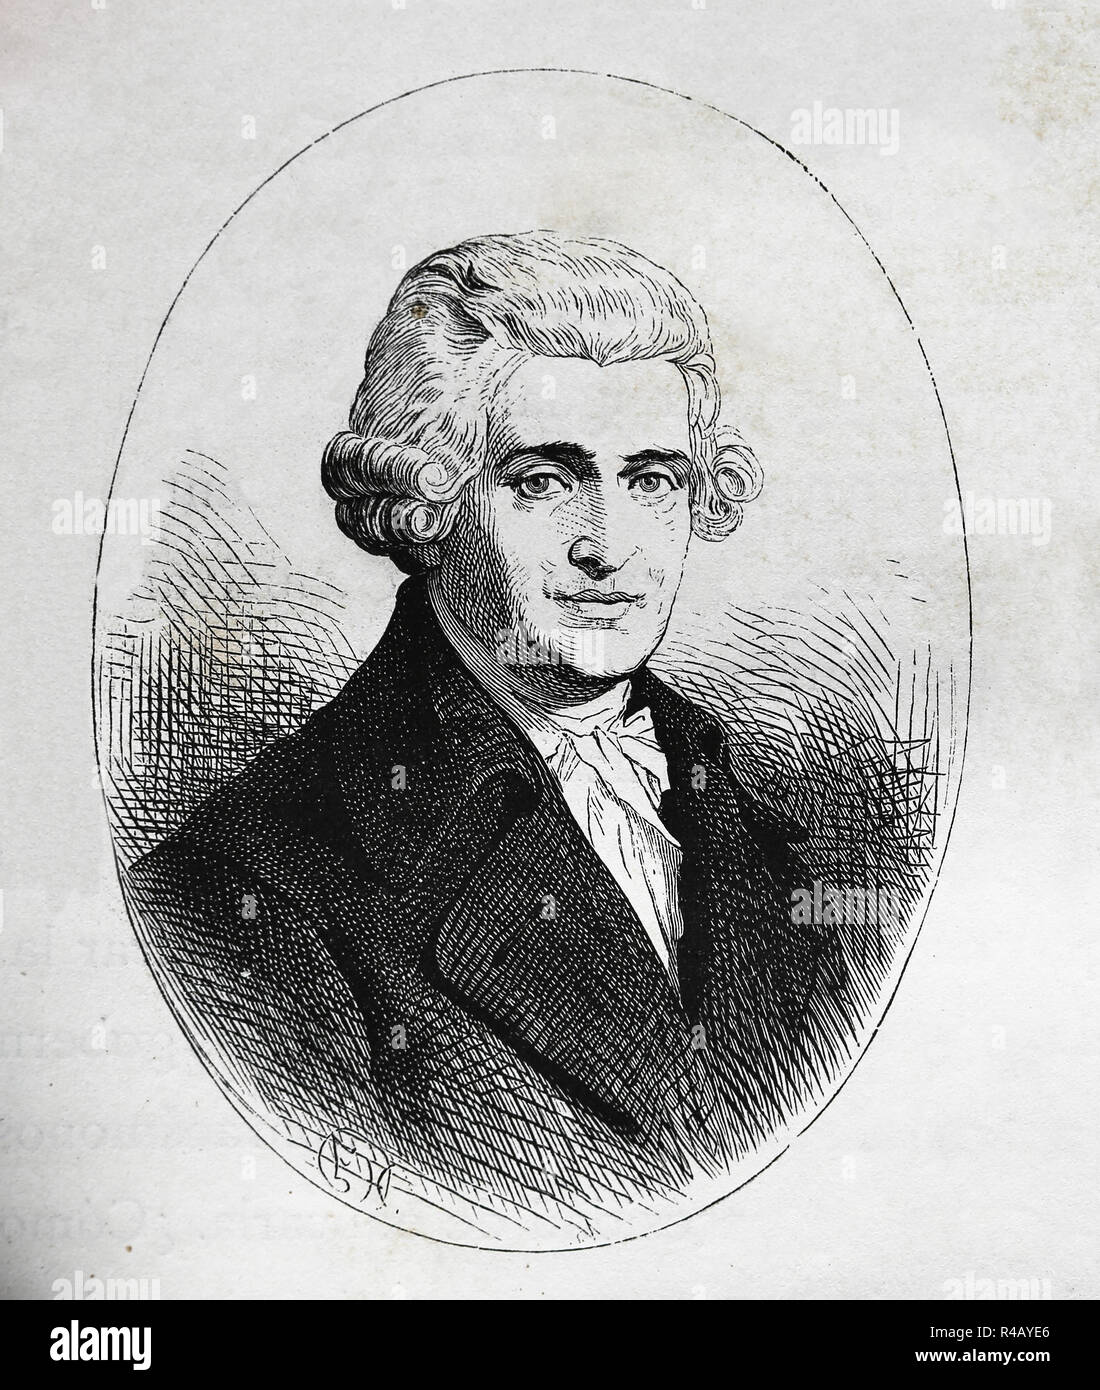 Joseph Haydn (1732-1809). Österreichischer Komponist der Klassischen Periode. Gravur der Germania, 1882. Stockfoto